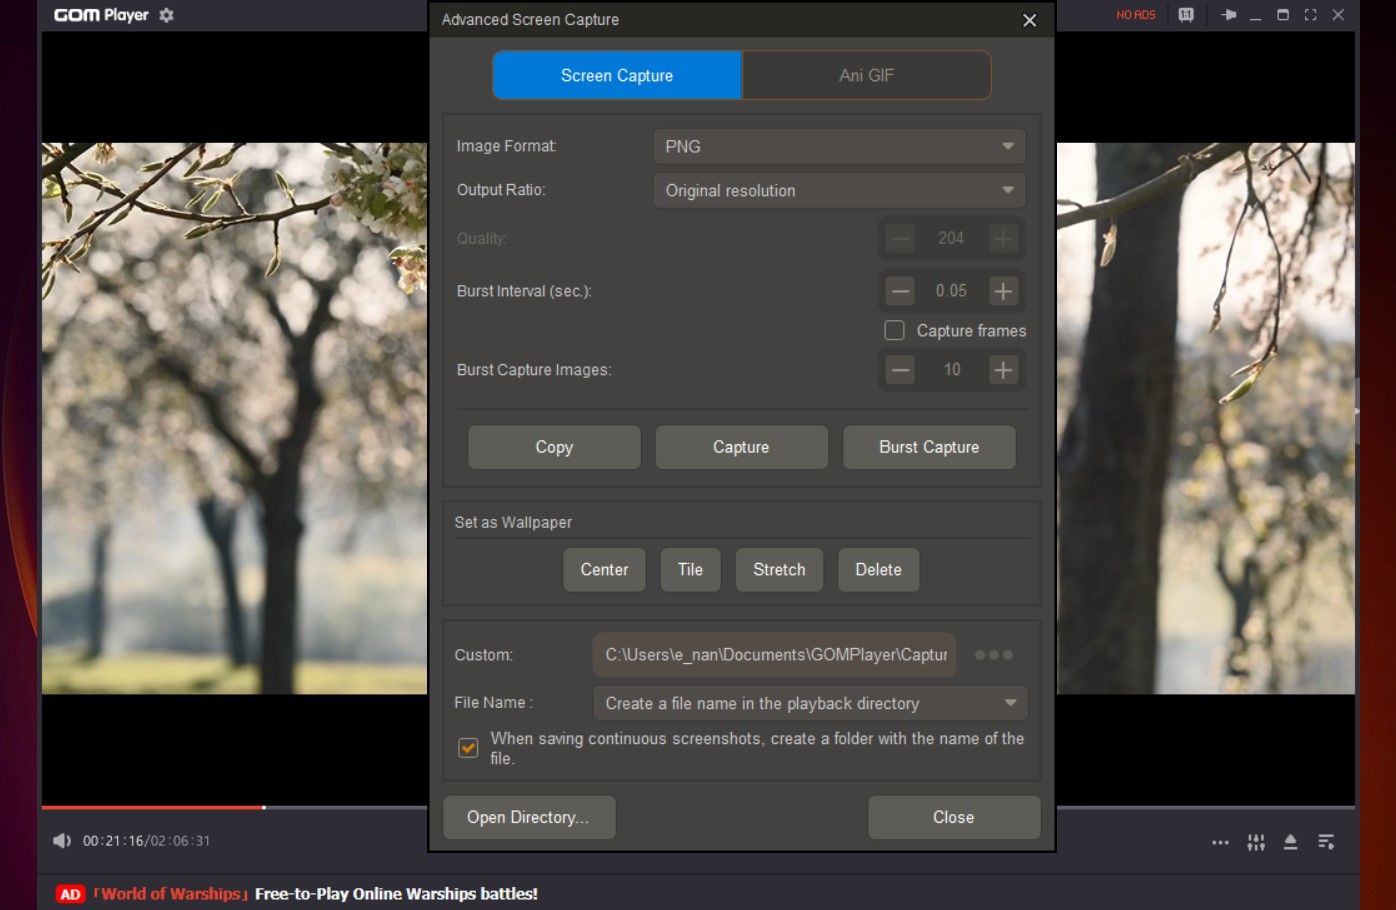 Configuración avanzada de captura de pantalla en GOM Player